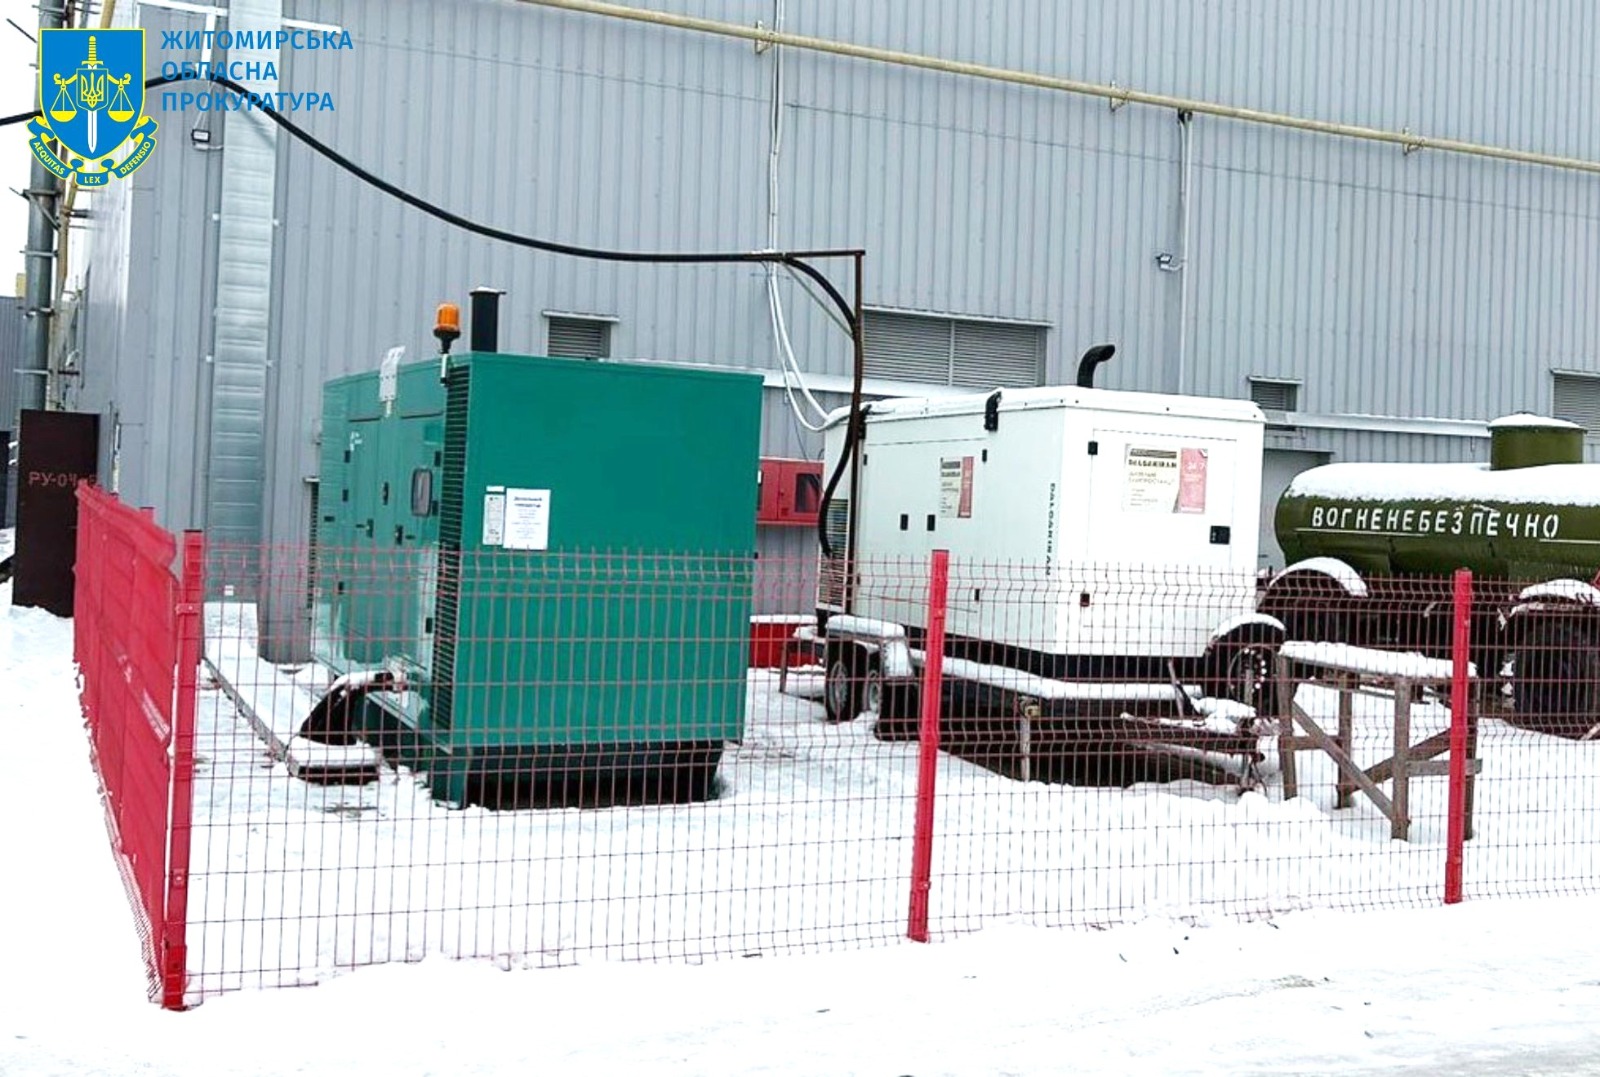 Розтрата майже 2 млн грн на закупівлі генераторів – на Житомирщині повідомлено про підозру посадовцю сільради